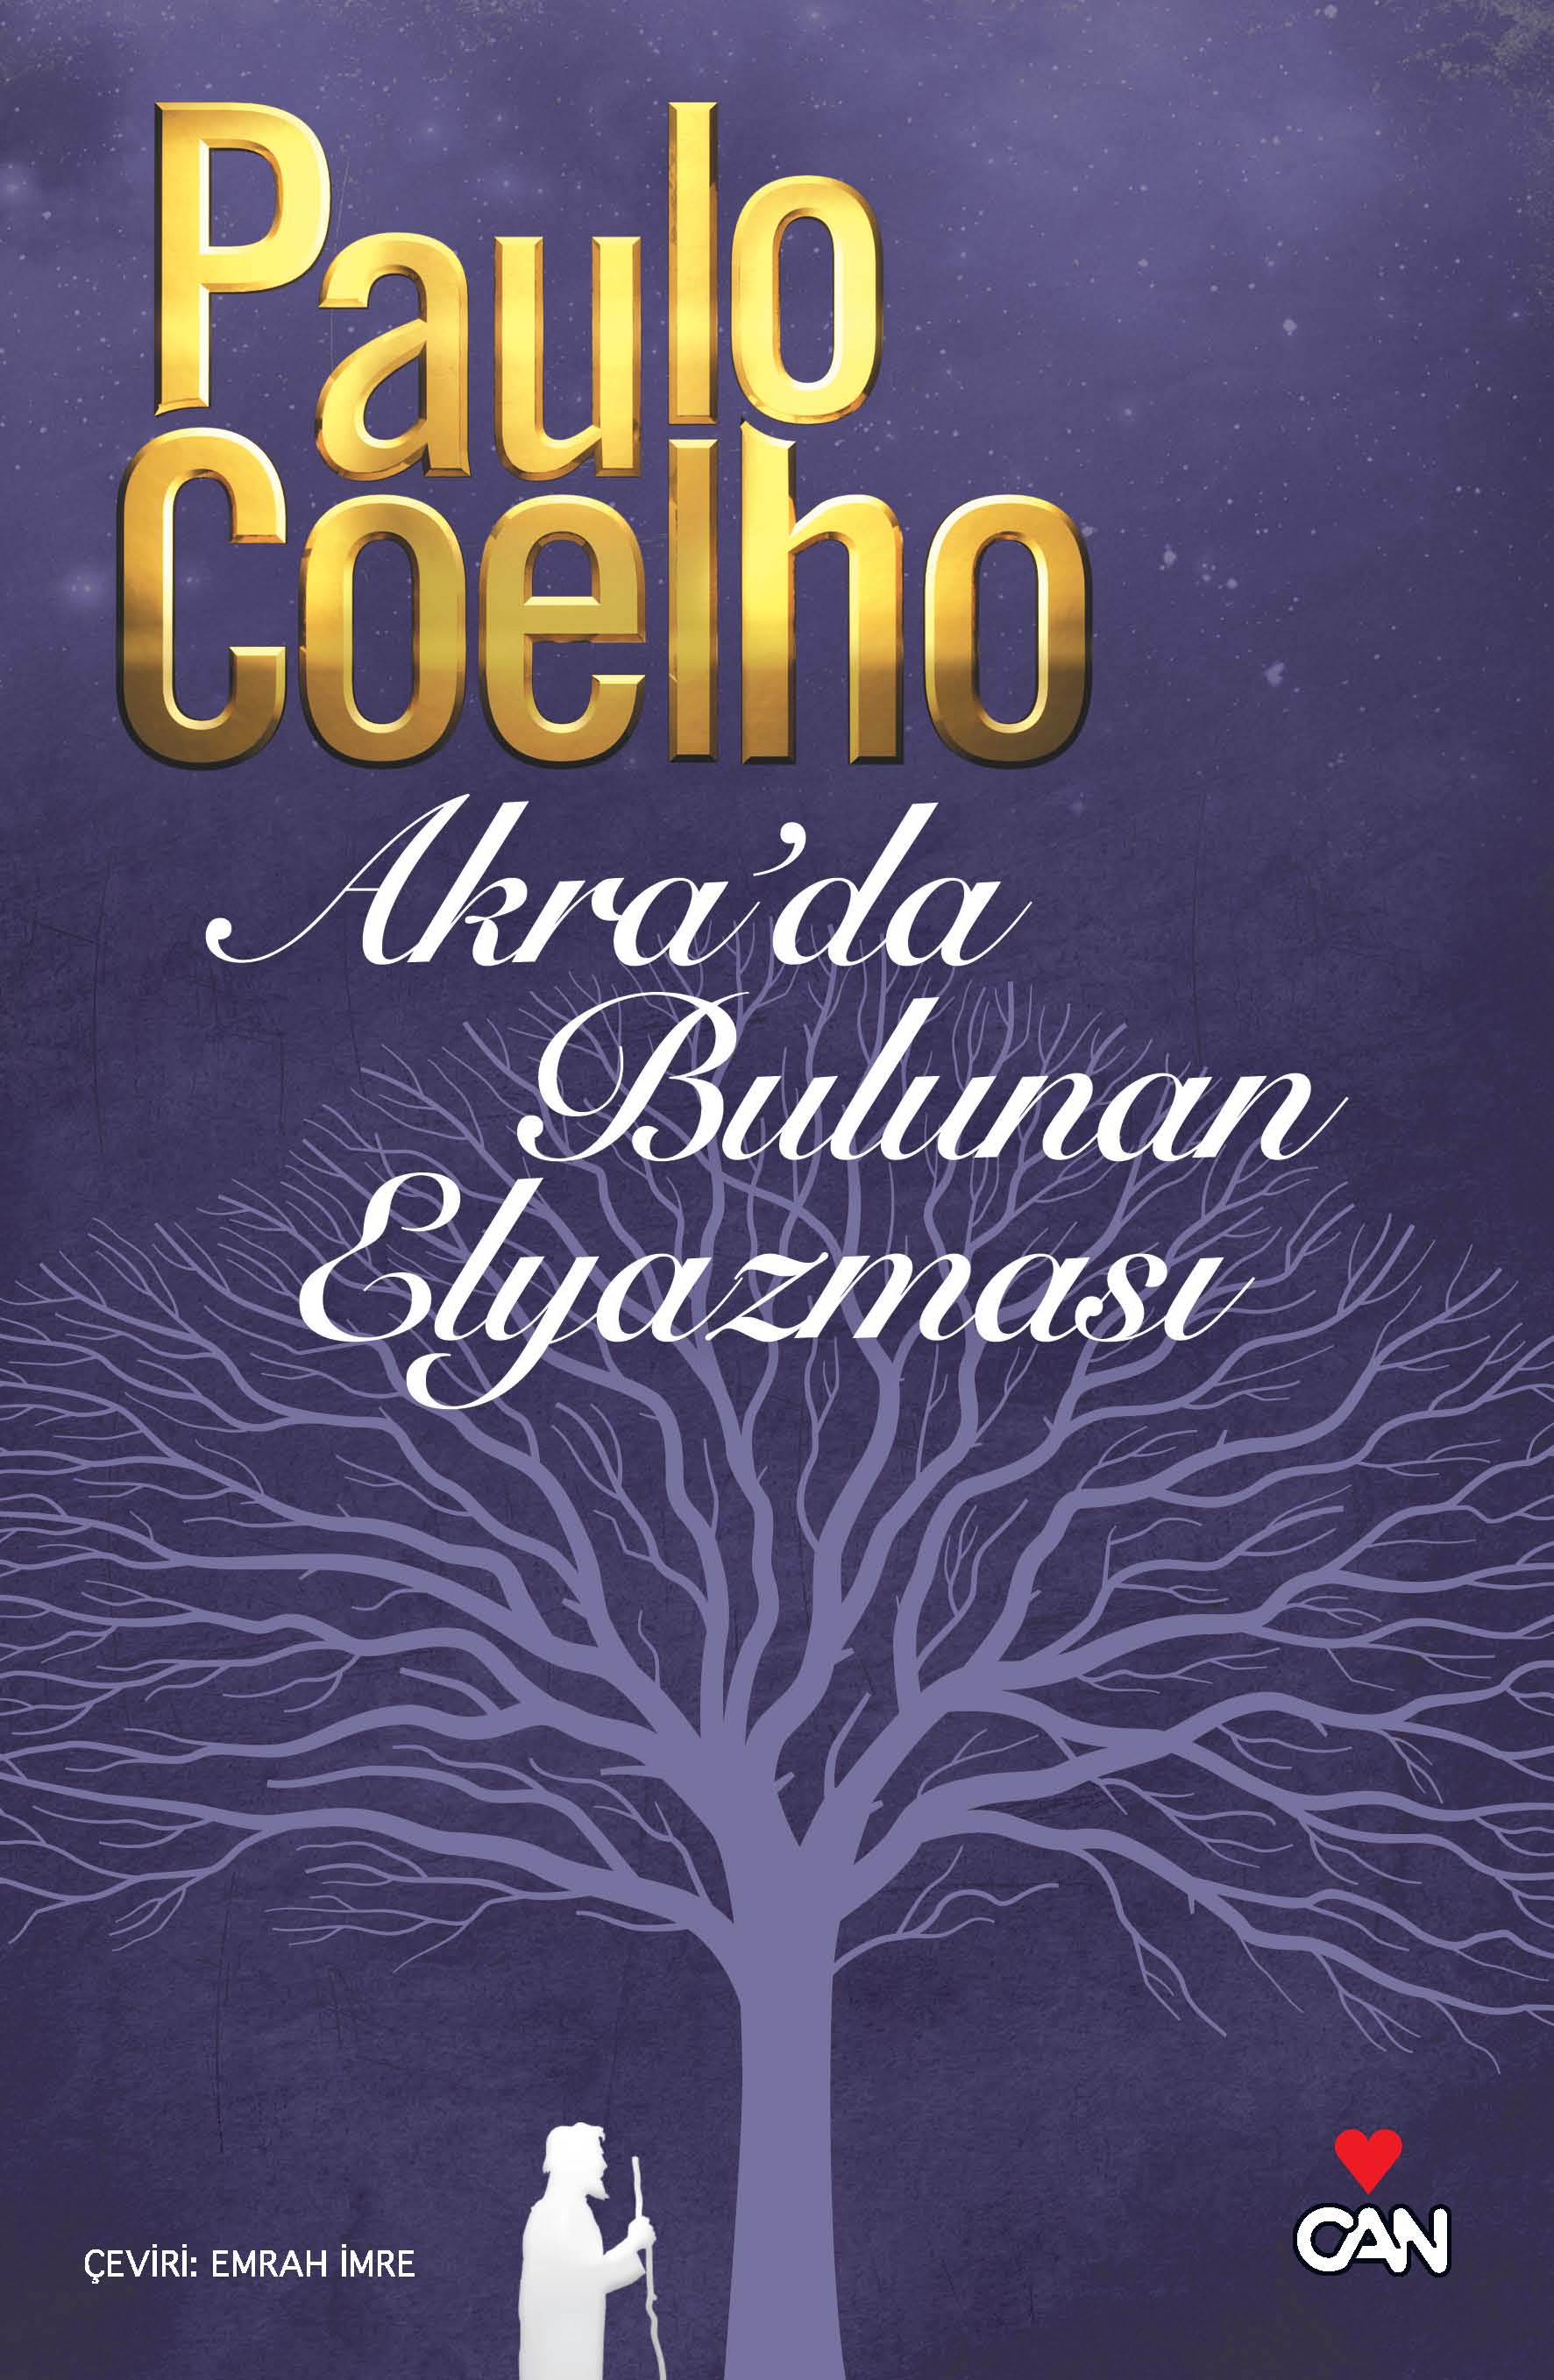 Paulo Coelho’nun yeni kitabı Türkçe’de